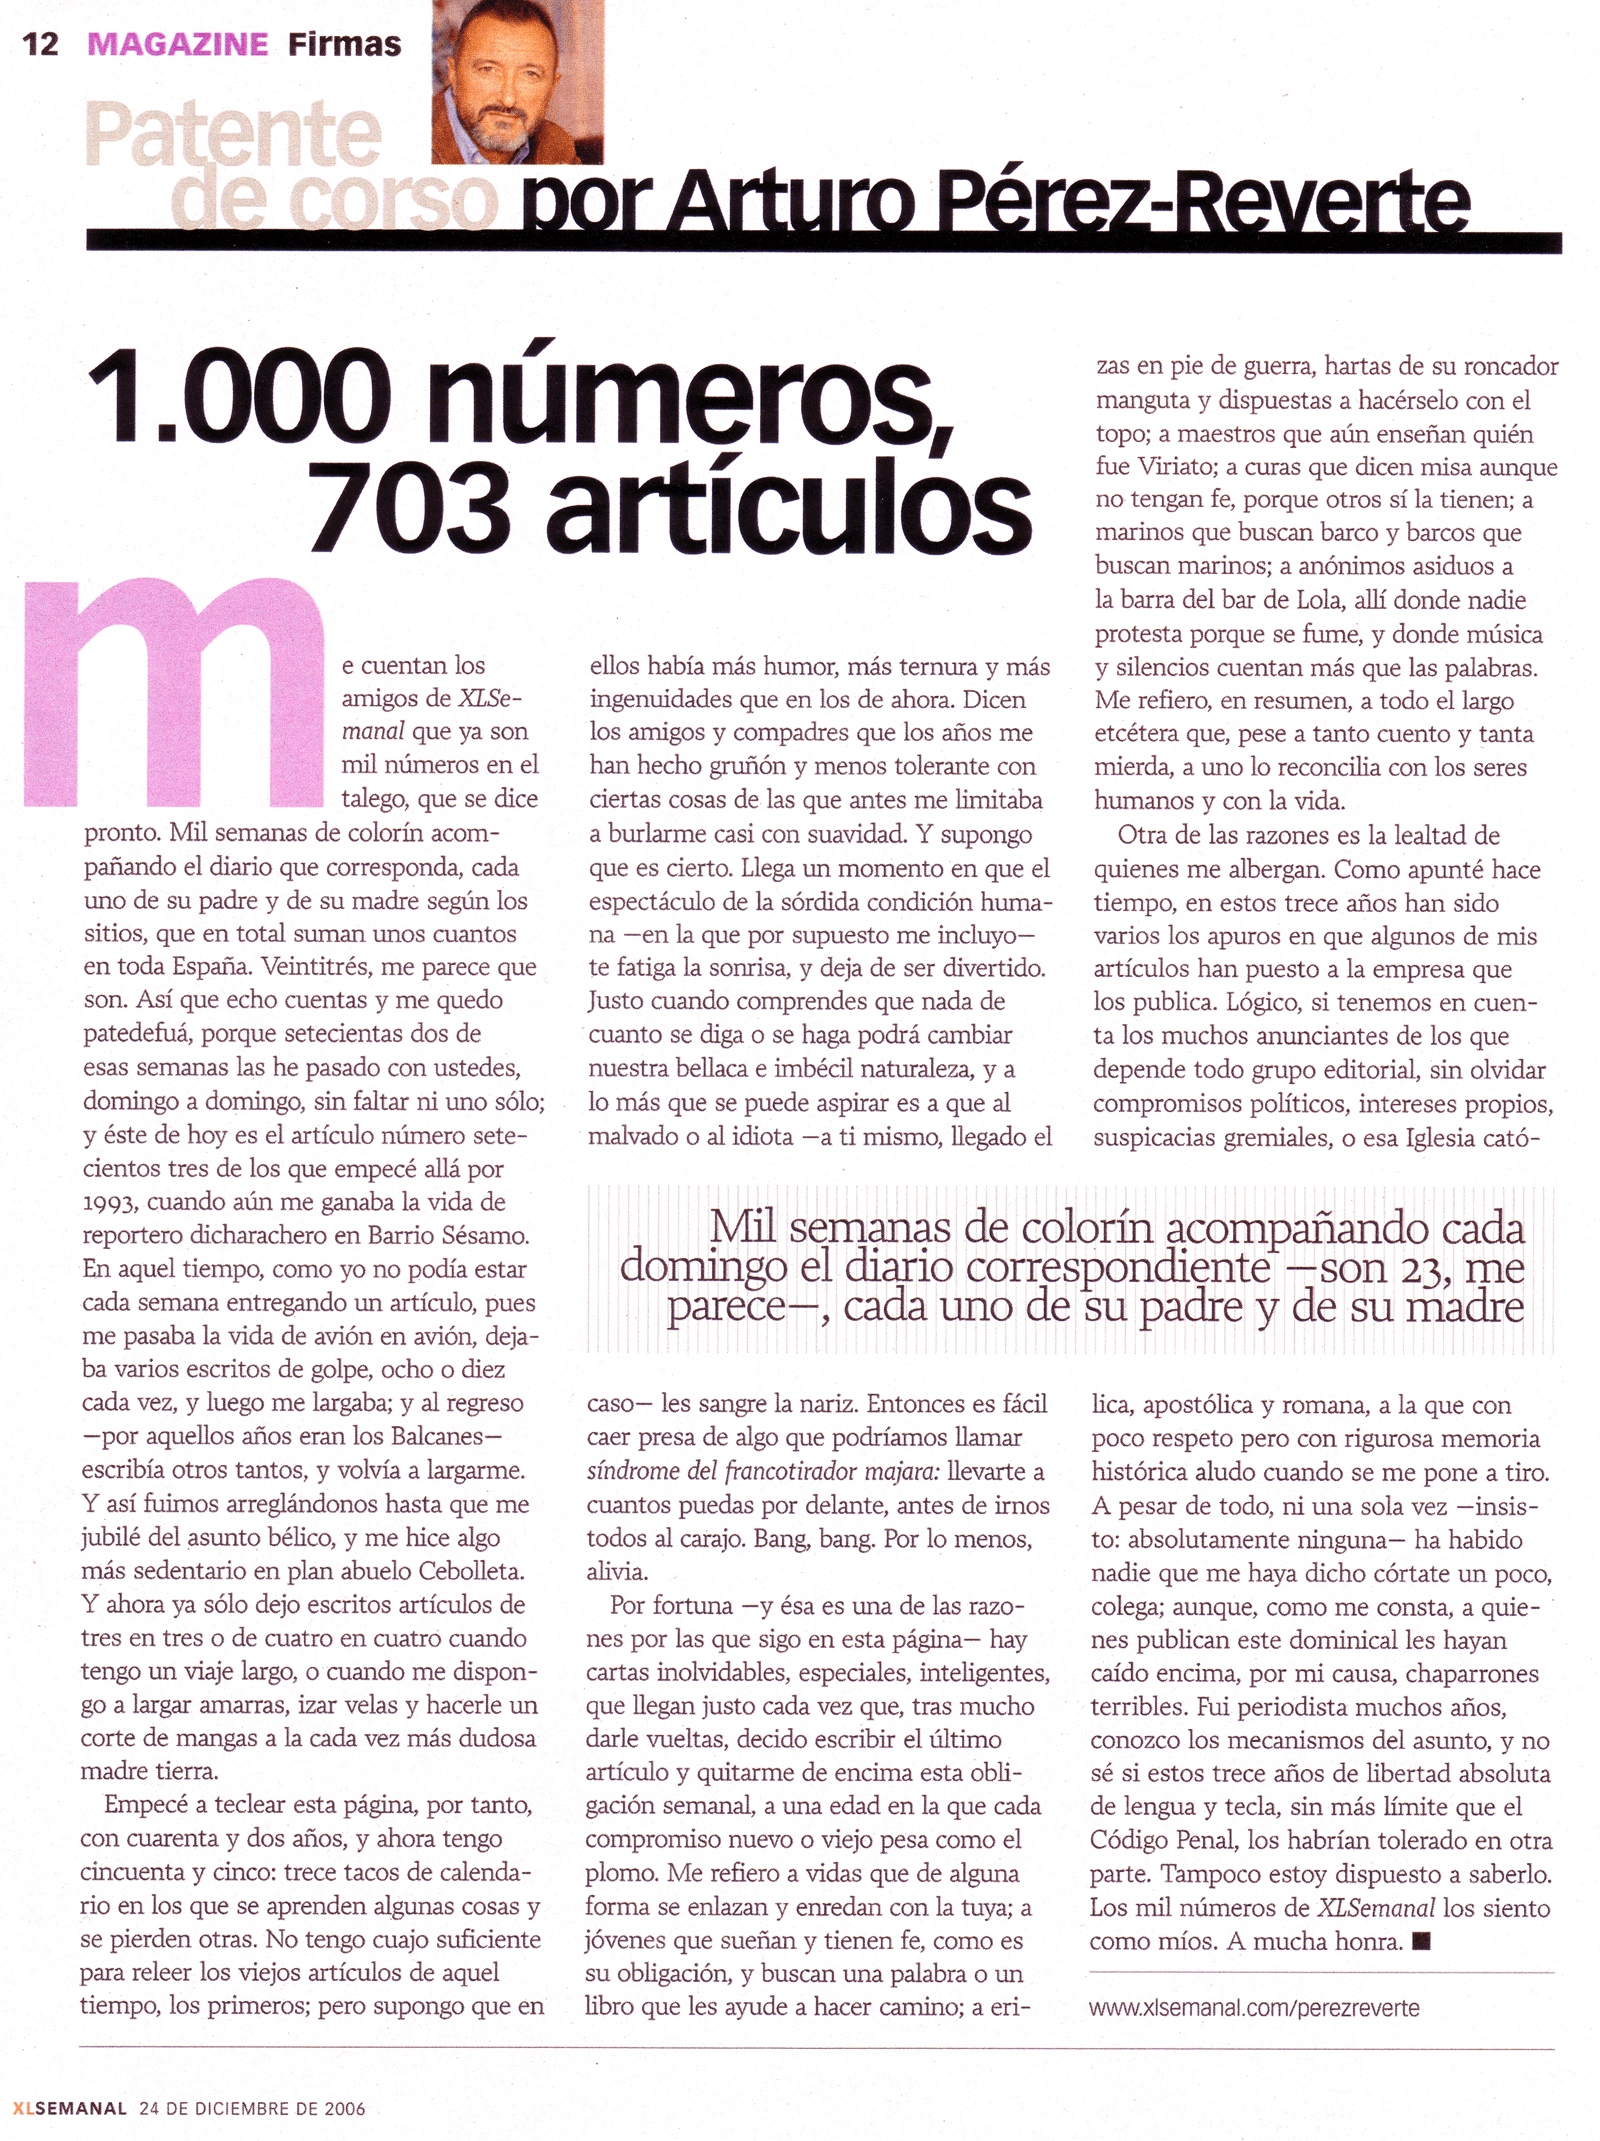 "1000 números, 703 artículos" XLSemanal, 24 de diciembre de 2006